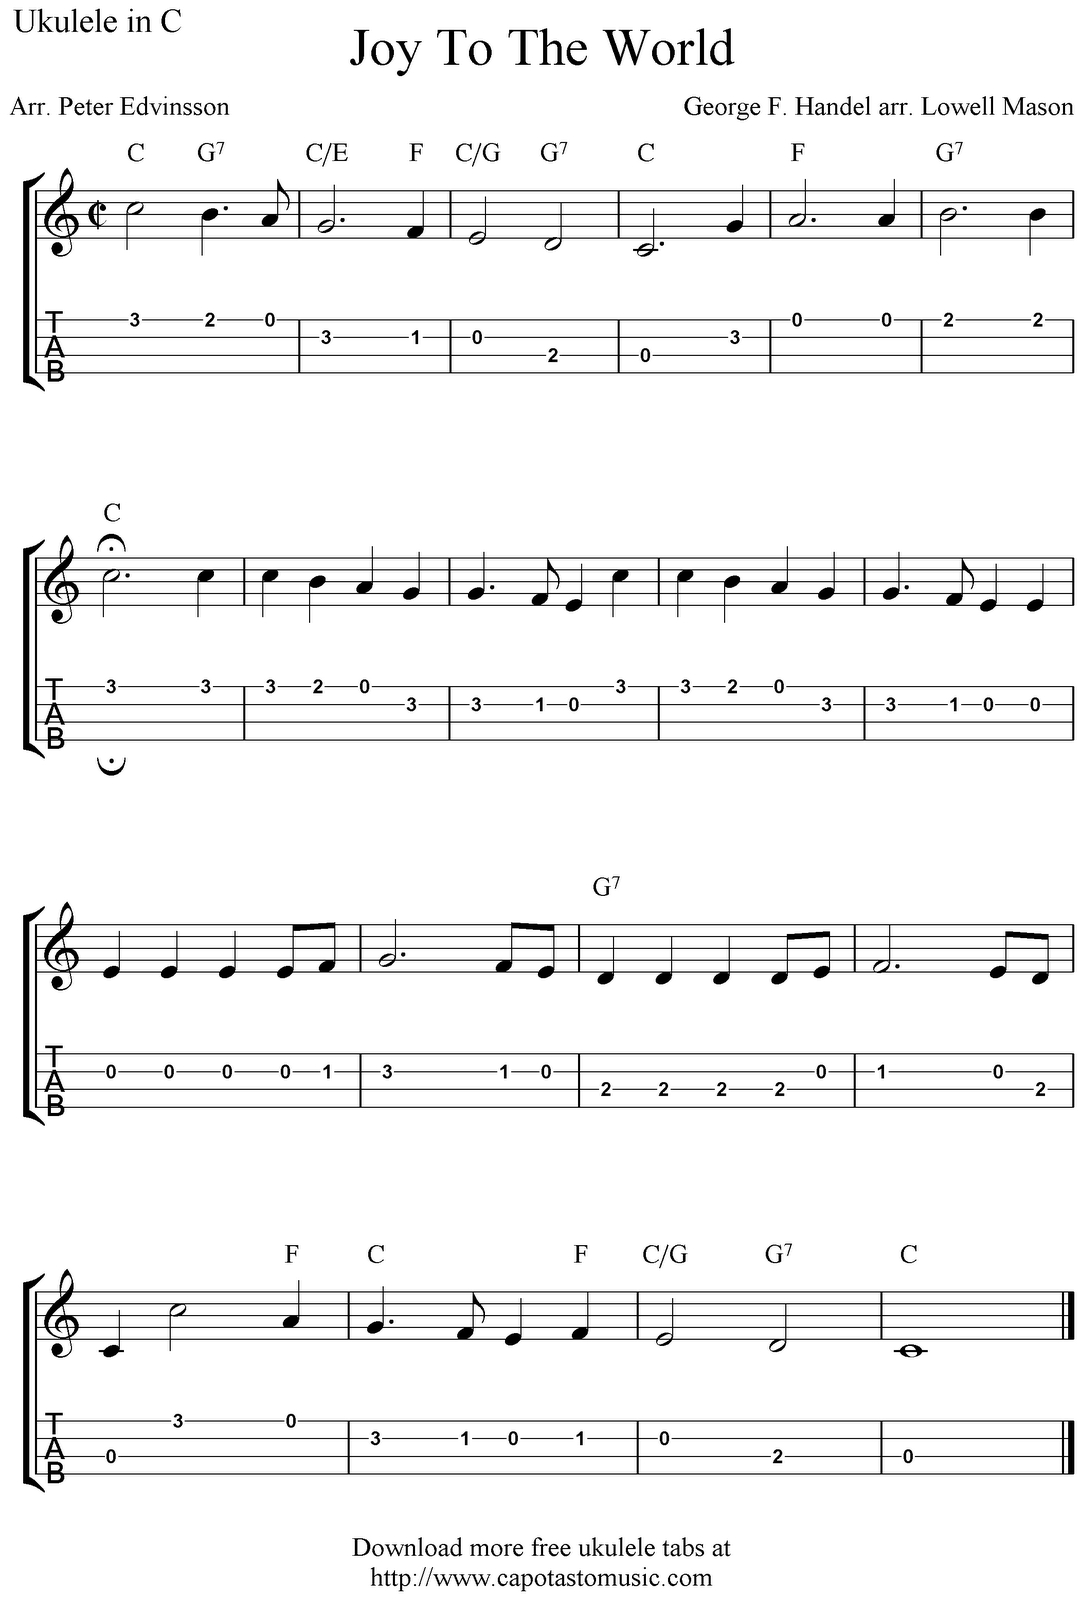 ✓&amp;quot;joy To The World&amp;quot; Ukulele Sheet Music - Free Printable | Music - Free Printable Ukulele Songs